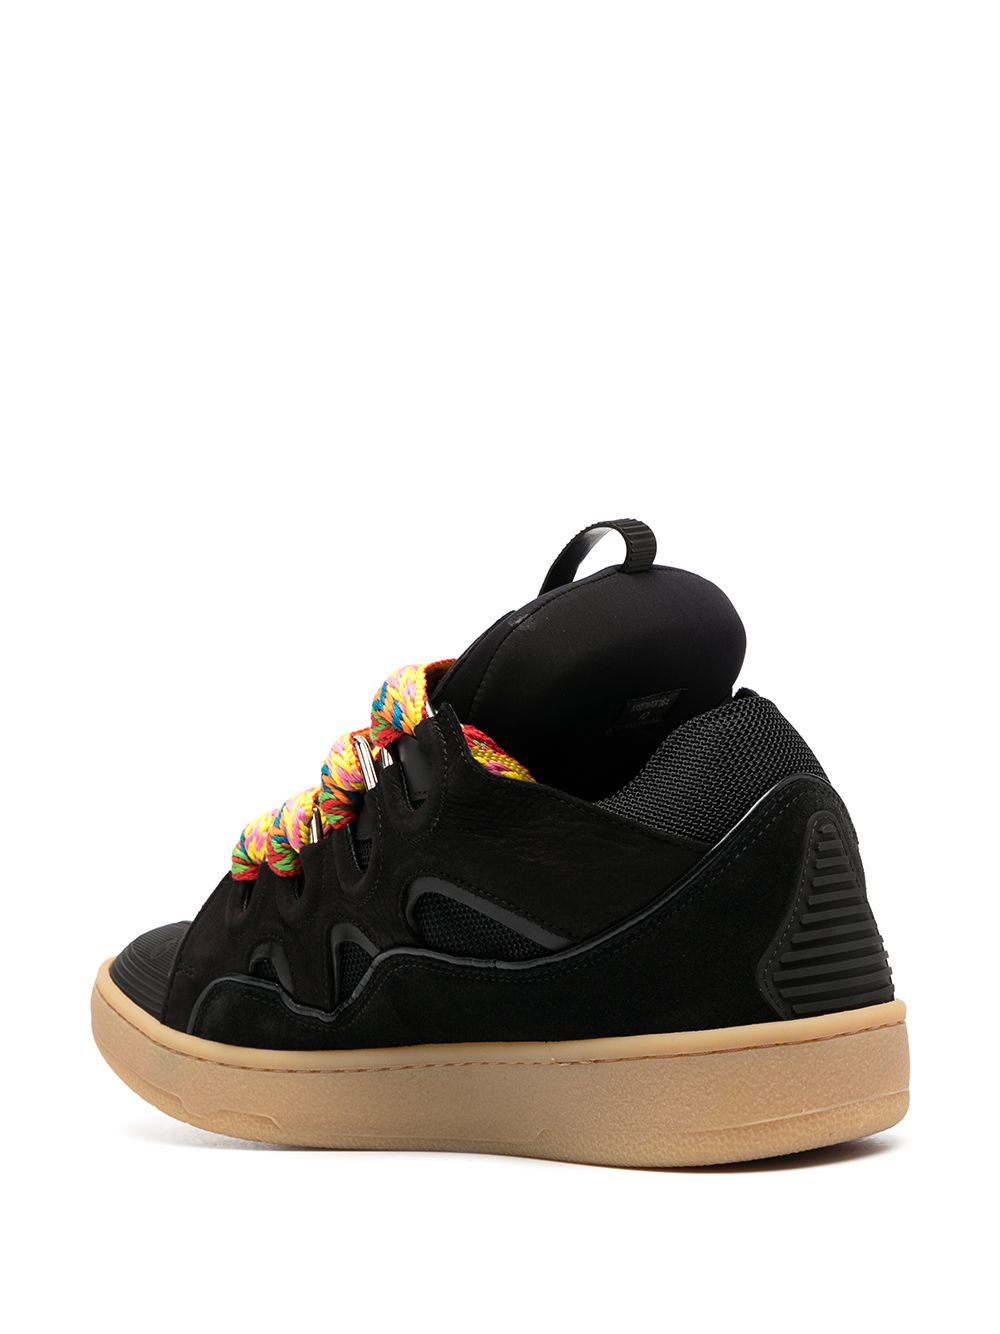 Black curb sneaker